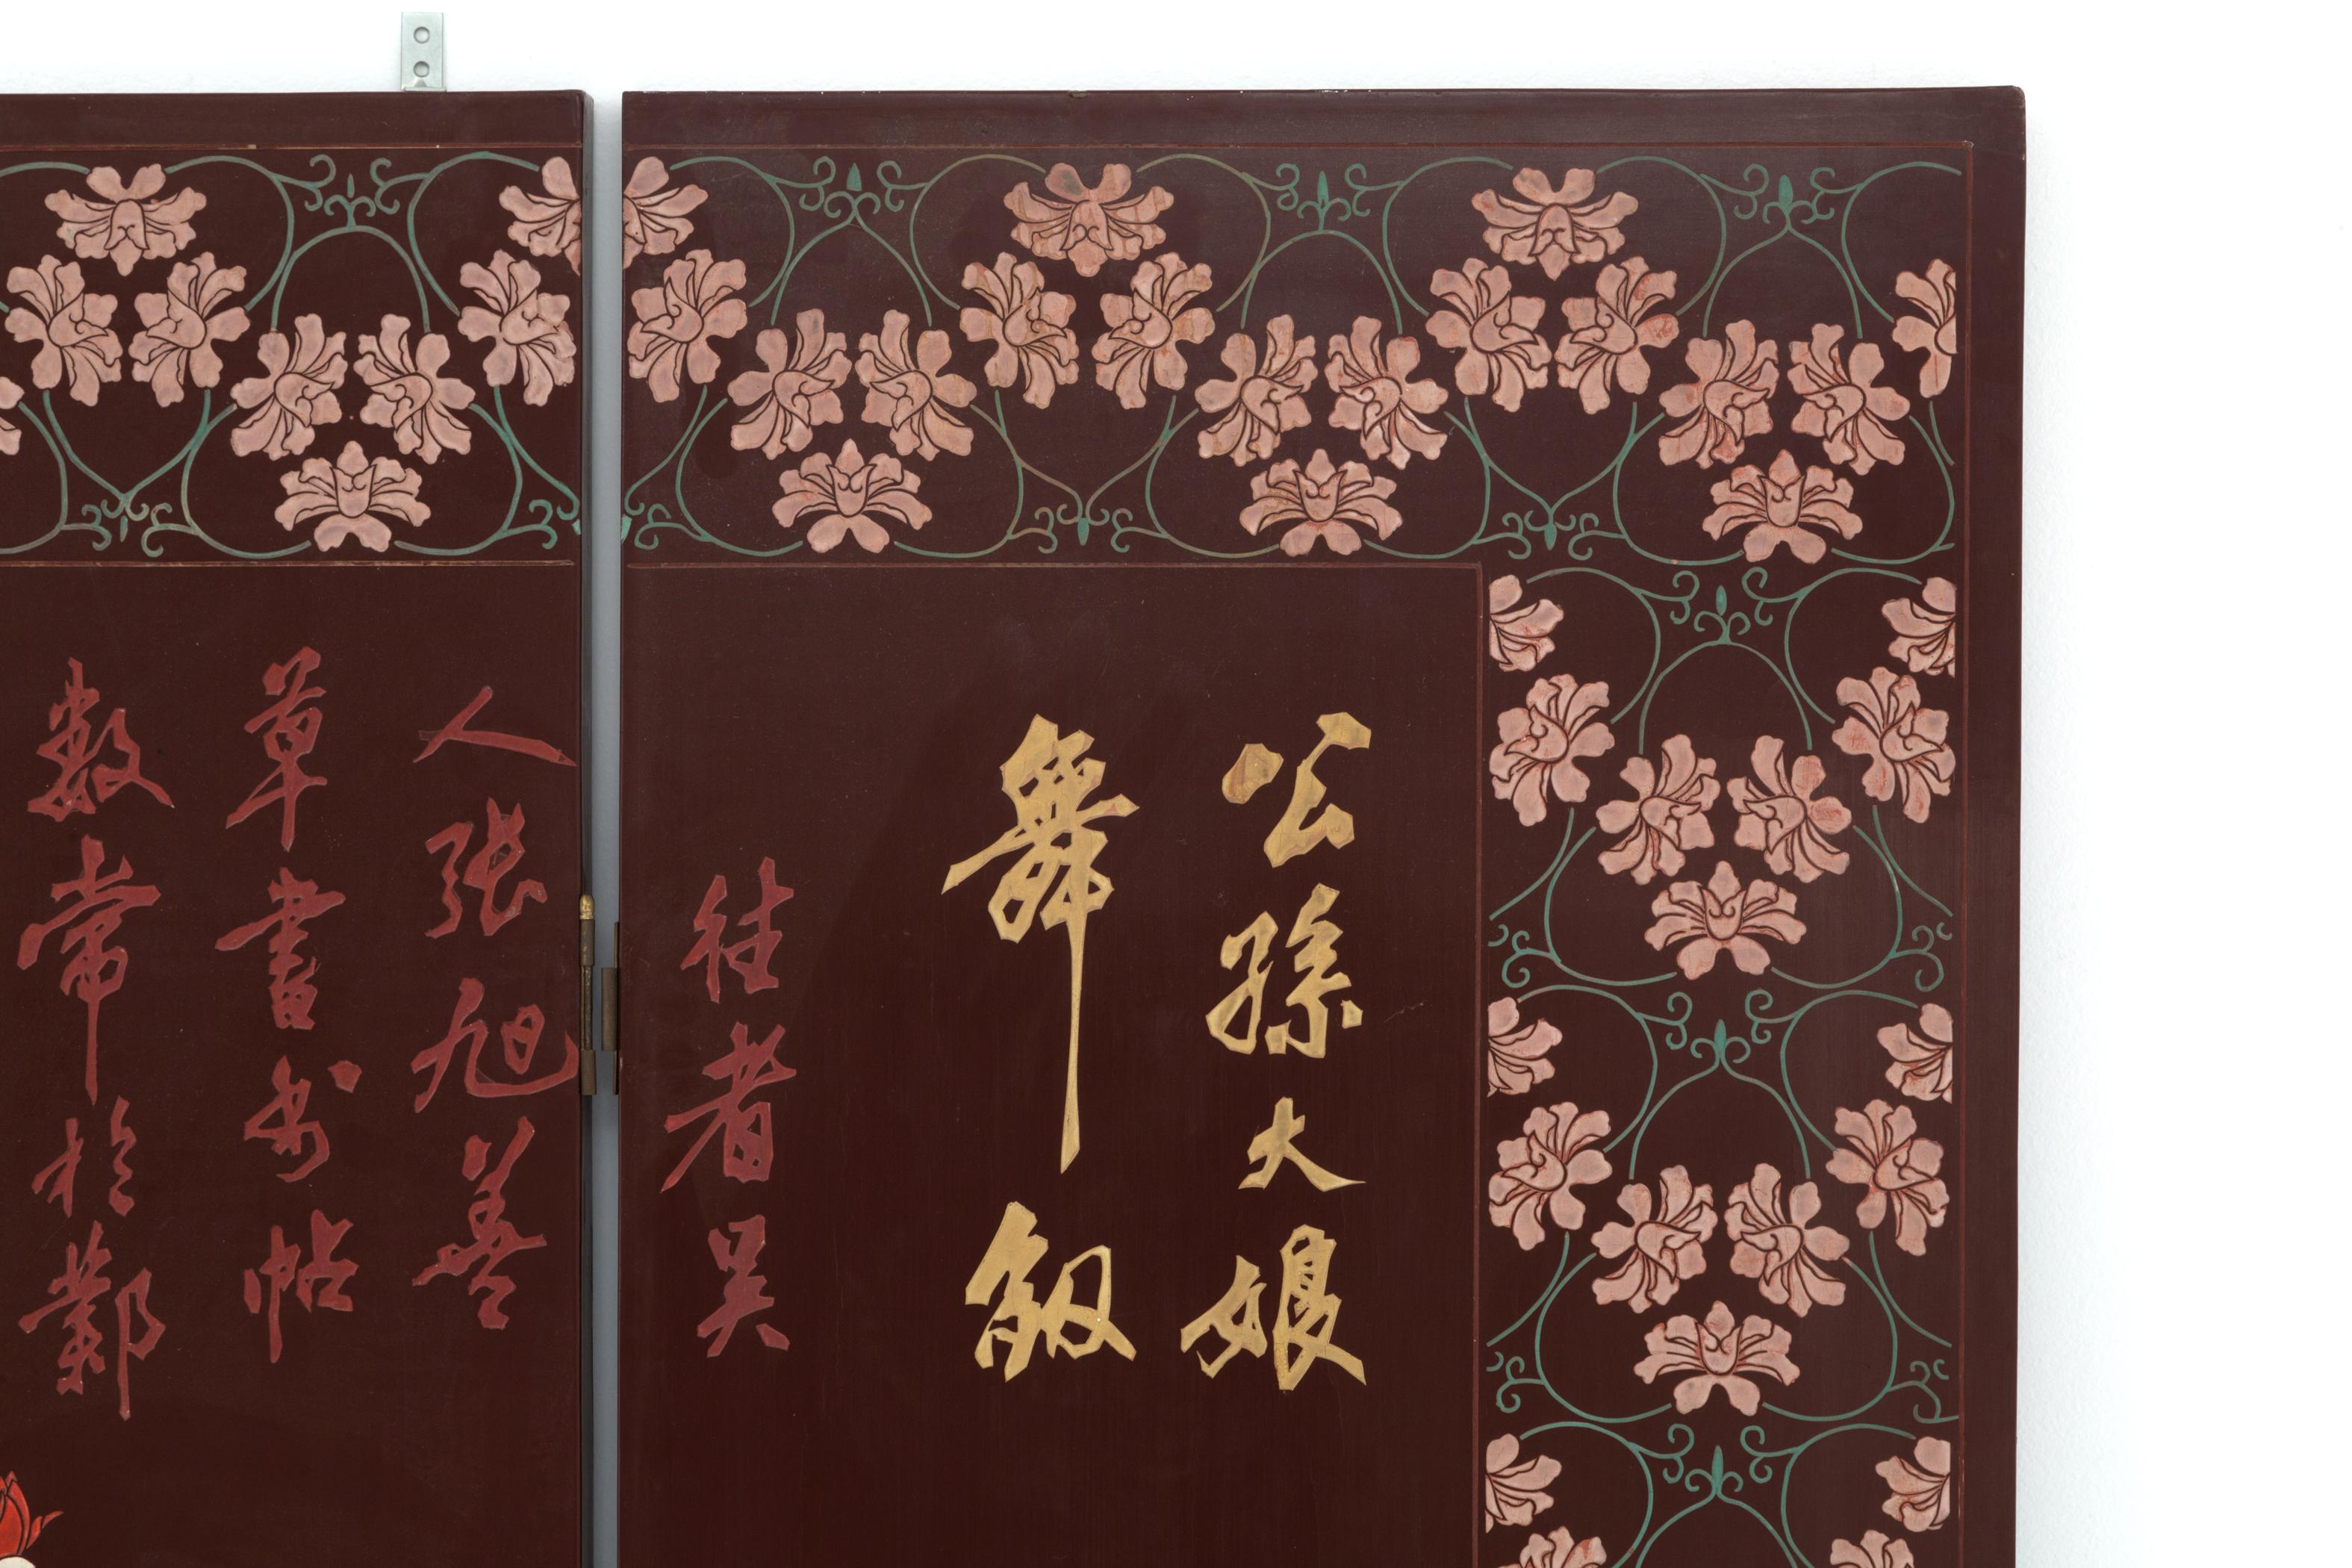 Seltene und schöne Bildschirm in geschnitztem Holz des 20. Jahrhunderts mit Messingfüßen, von sechs Platten gebildet. Jede Tafel zeigt Szenen aus dem chinesischen Leben, umrahmt von Blumendekorationen, die Rückseite ist mit Schriftzeichen versehen.